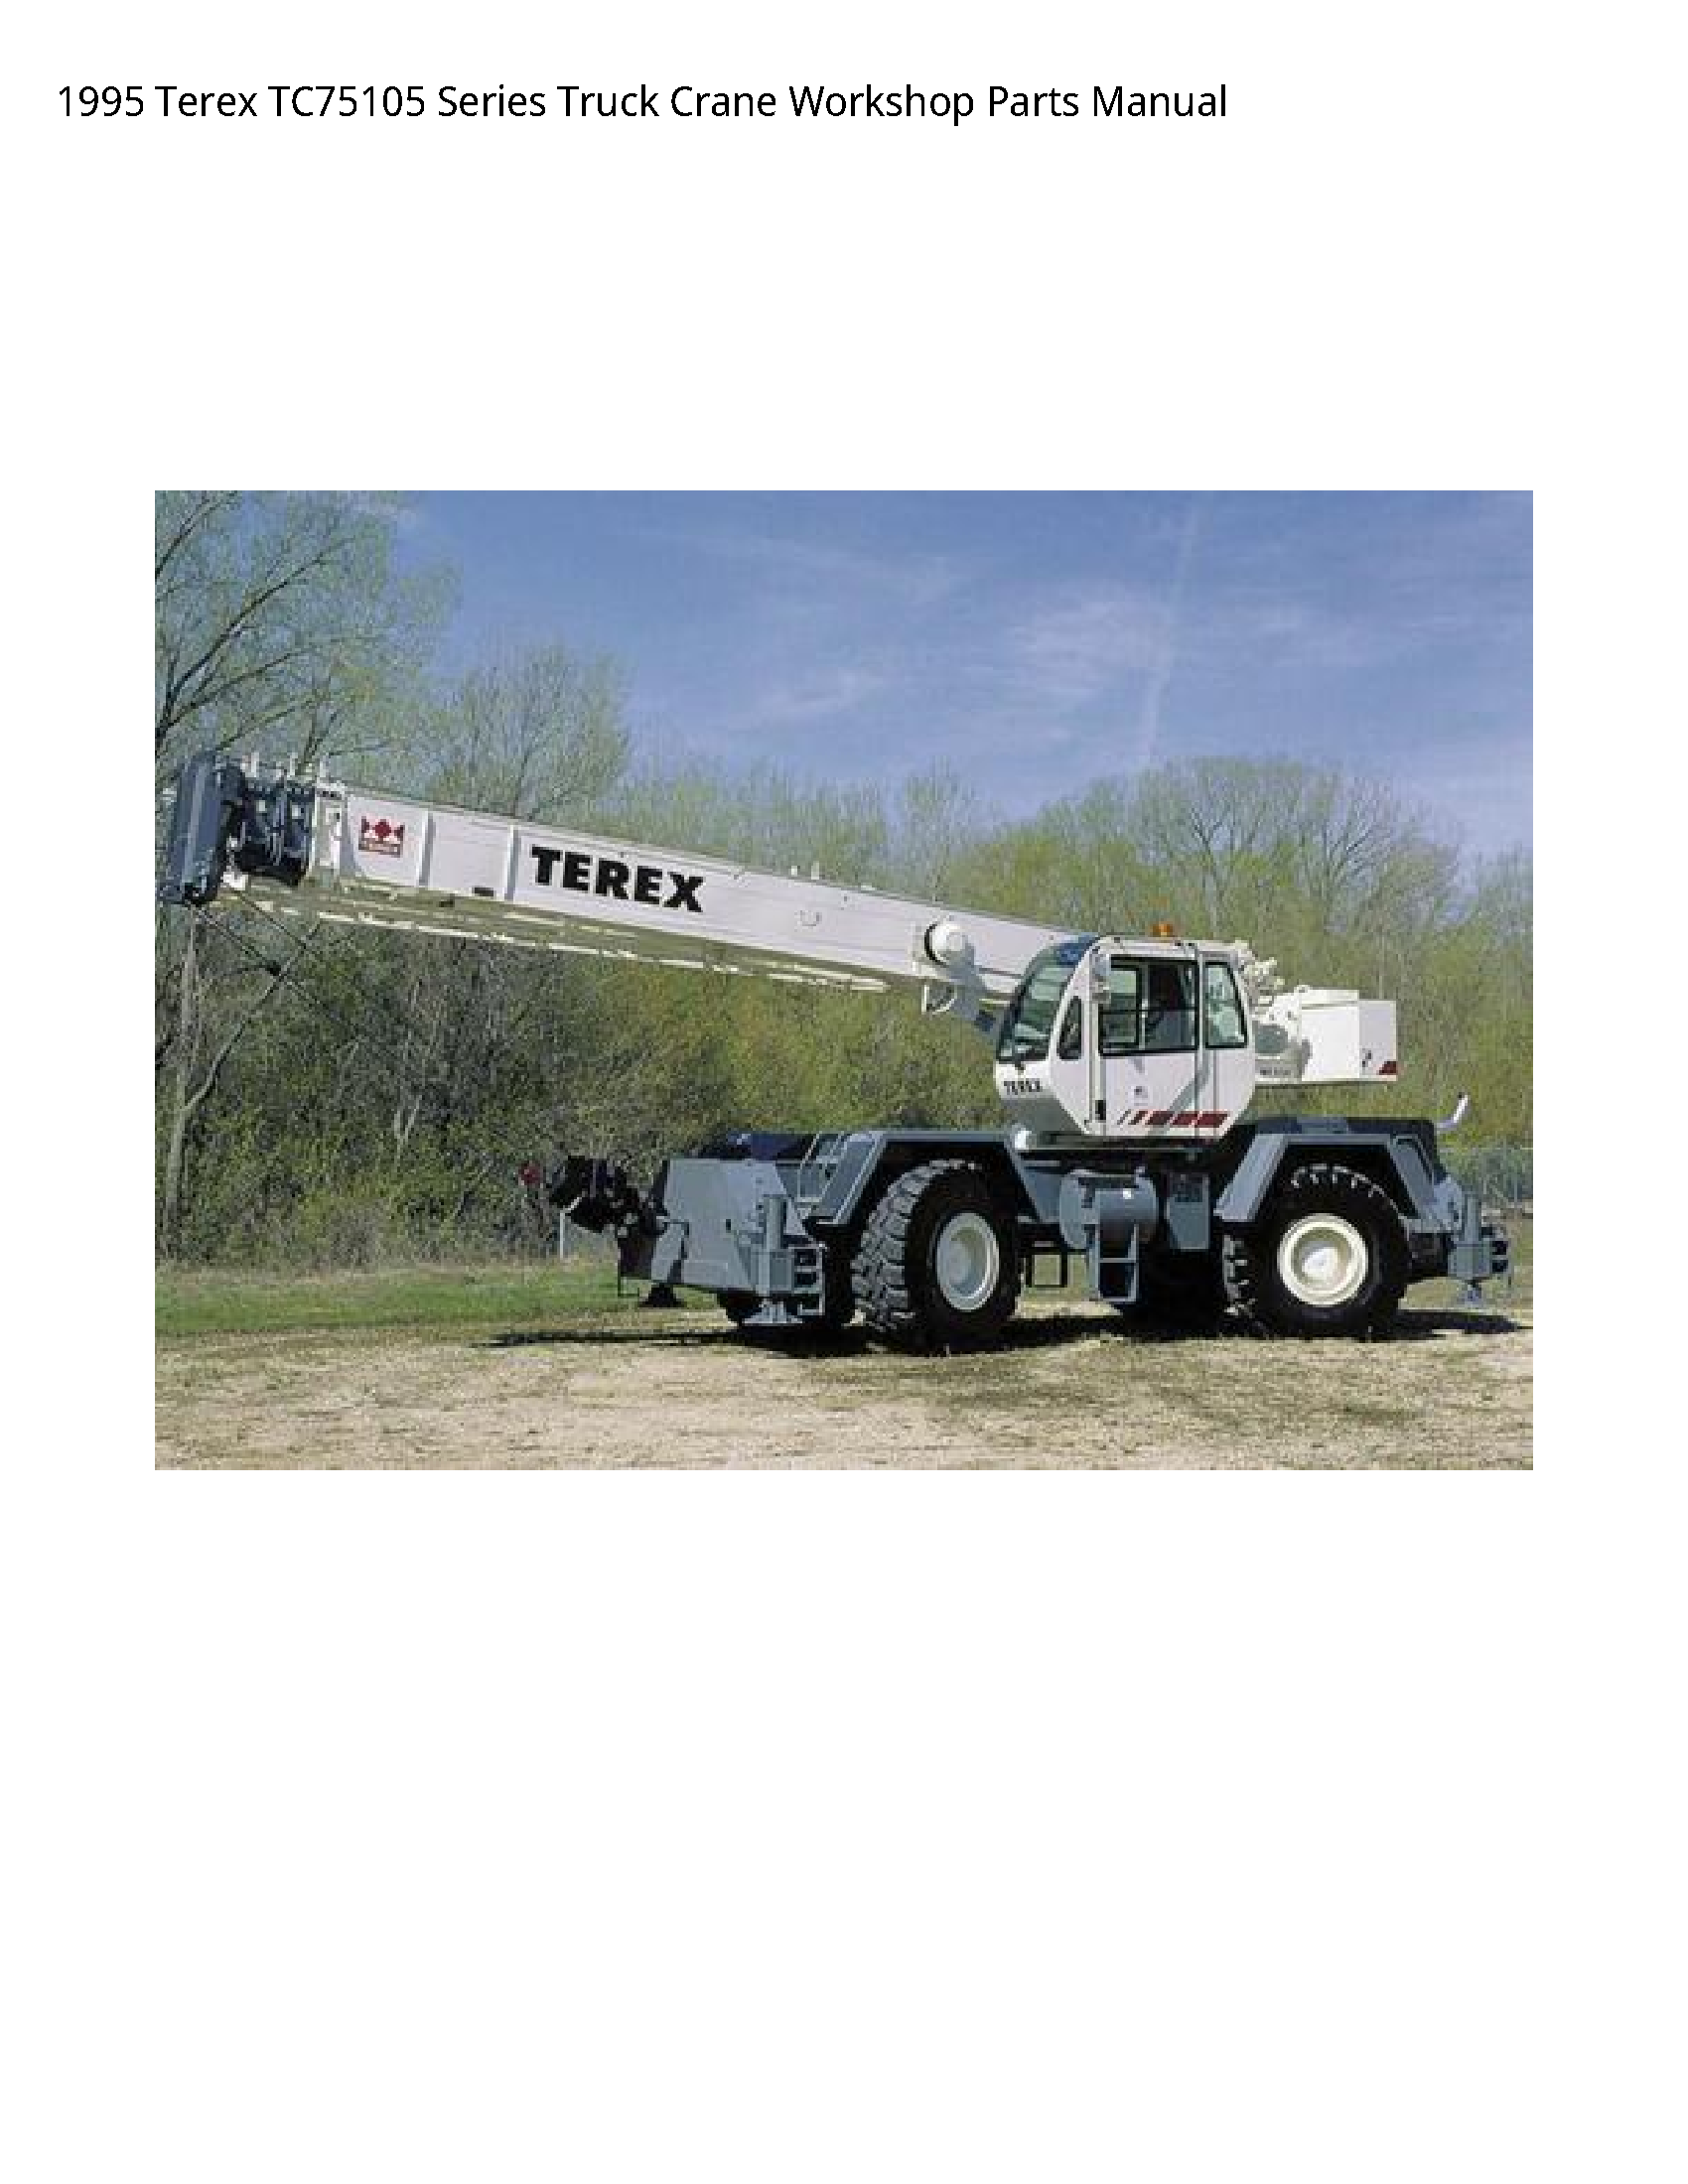 Terex TC75105 Series Truck Crane Parts manual